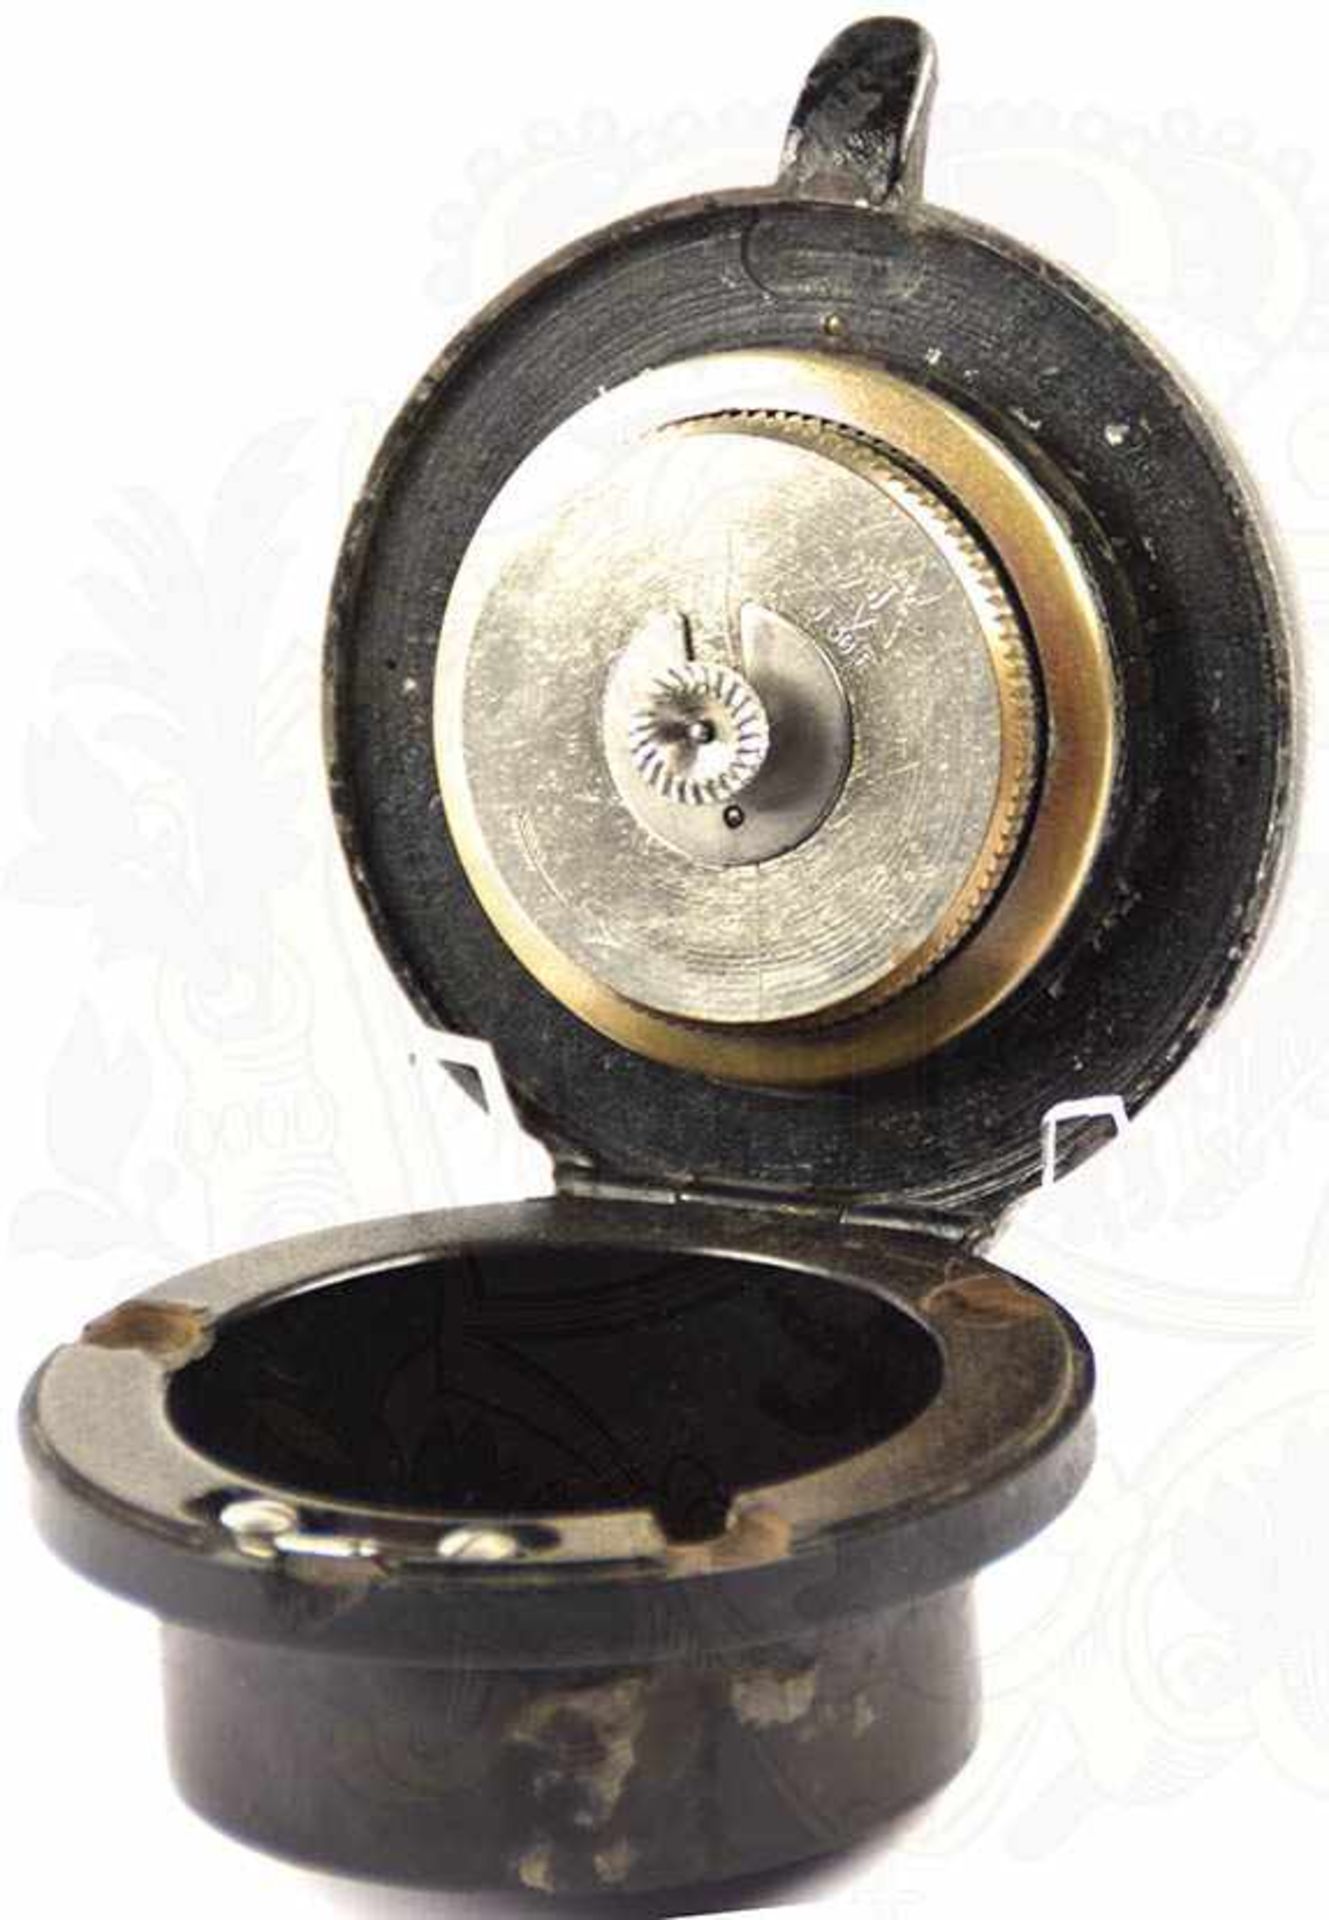 BORDUHR, Herst. „Junghans J 30 E“, Uhrwerk läuft, im klappbaren Bakelit-Gehäuse, um 1940 - Bild 2 aus 3